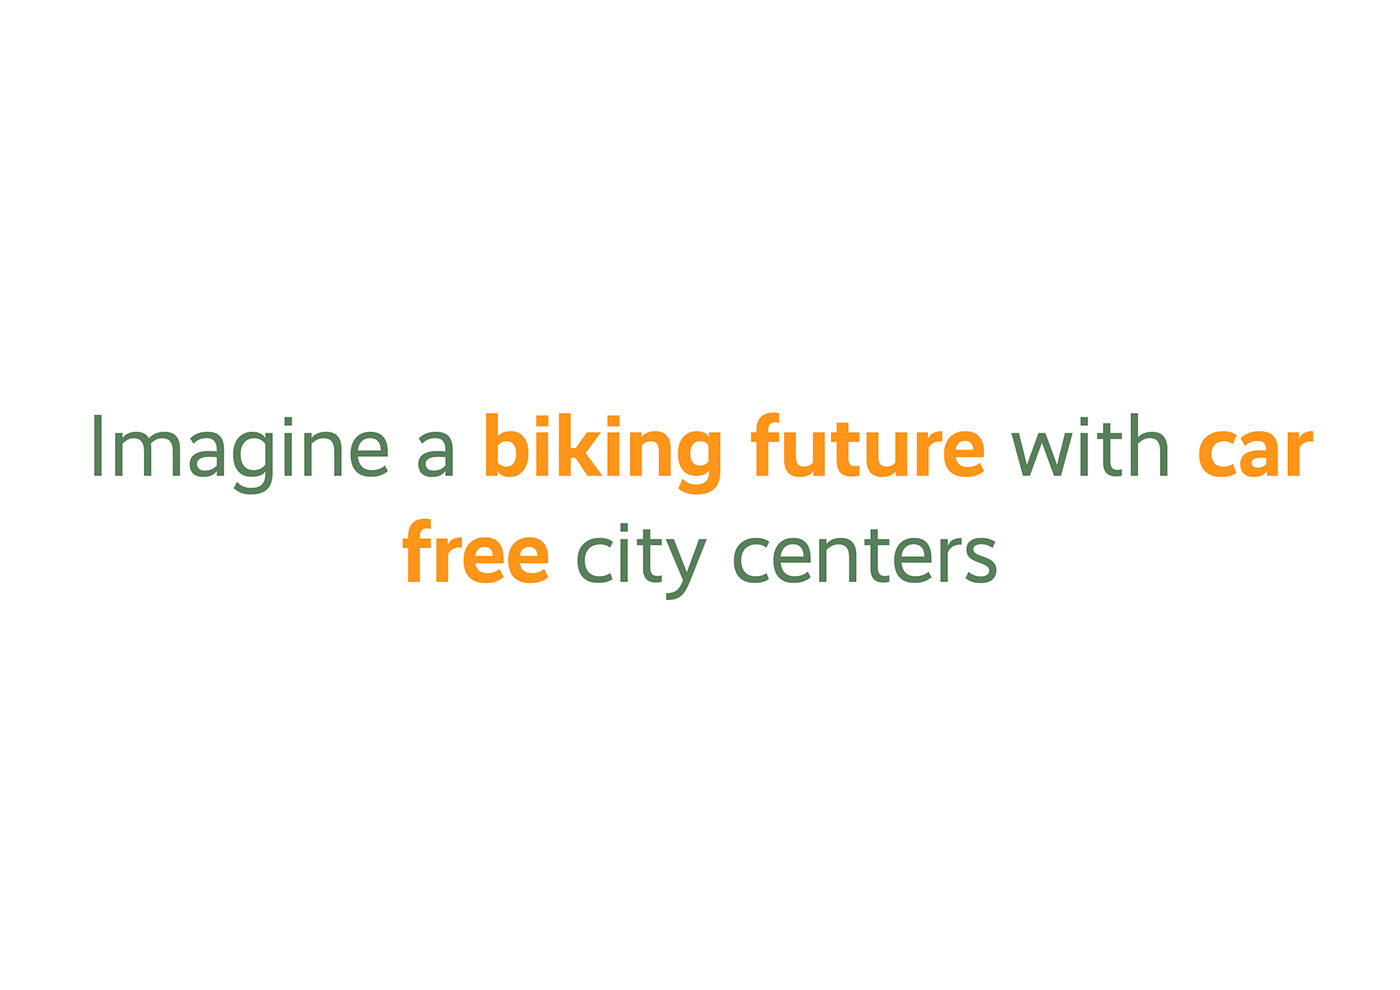 Bike biking city parking underground